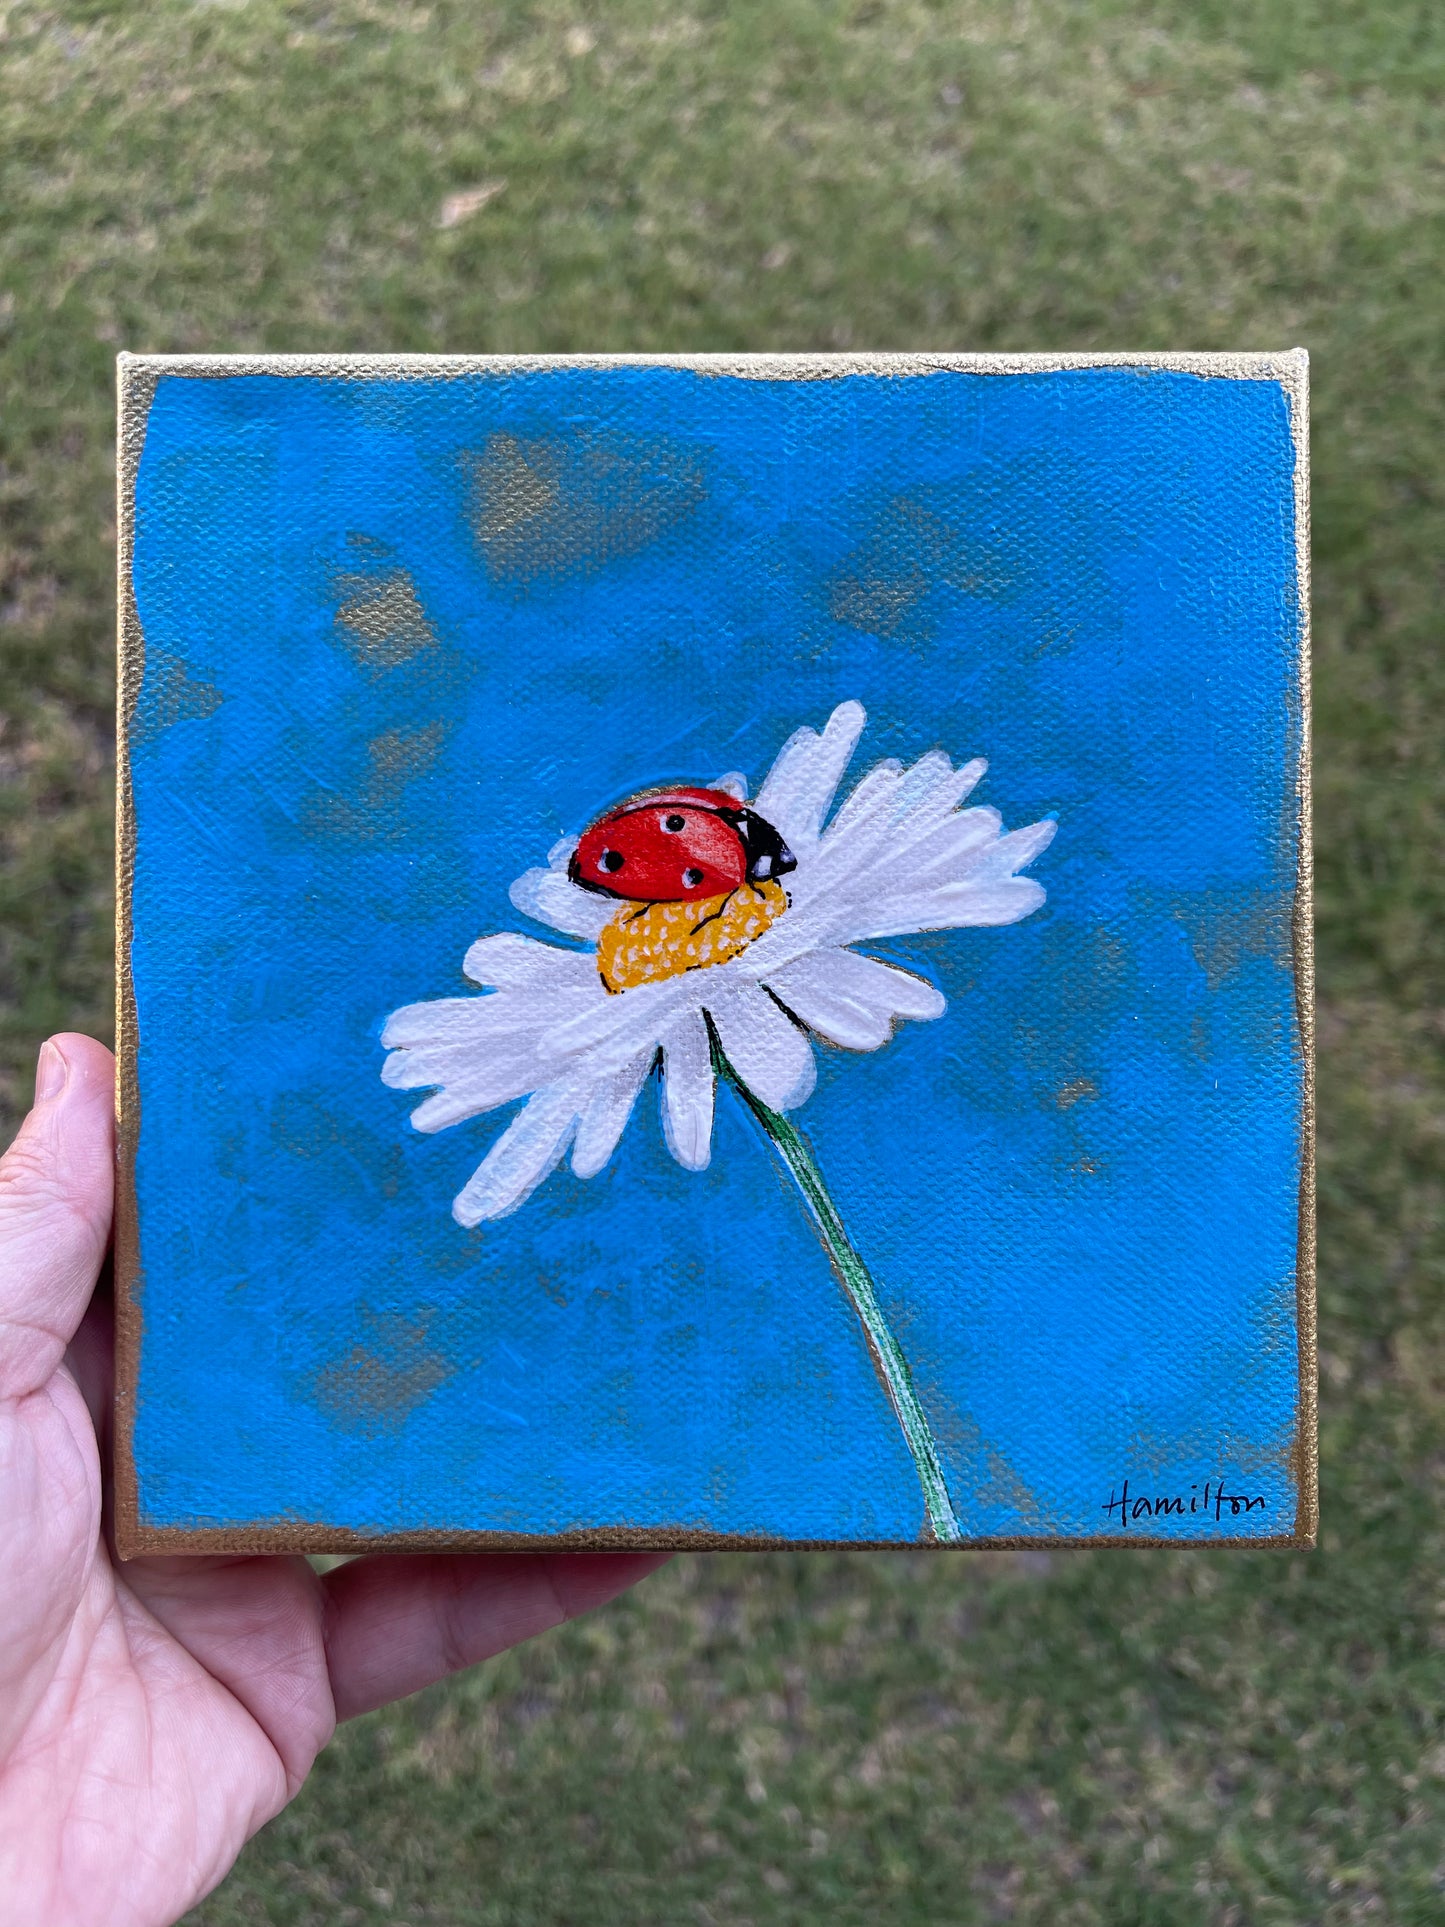 Ladybug with Daisy